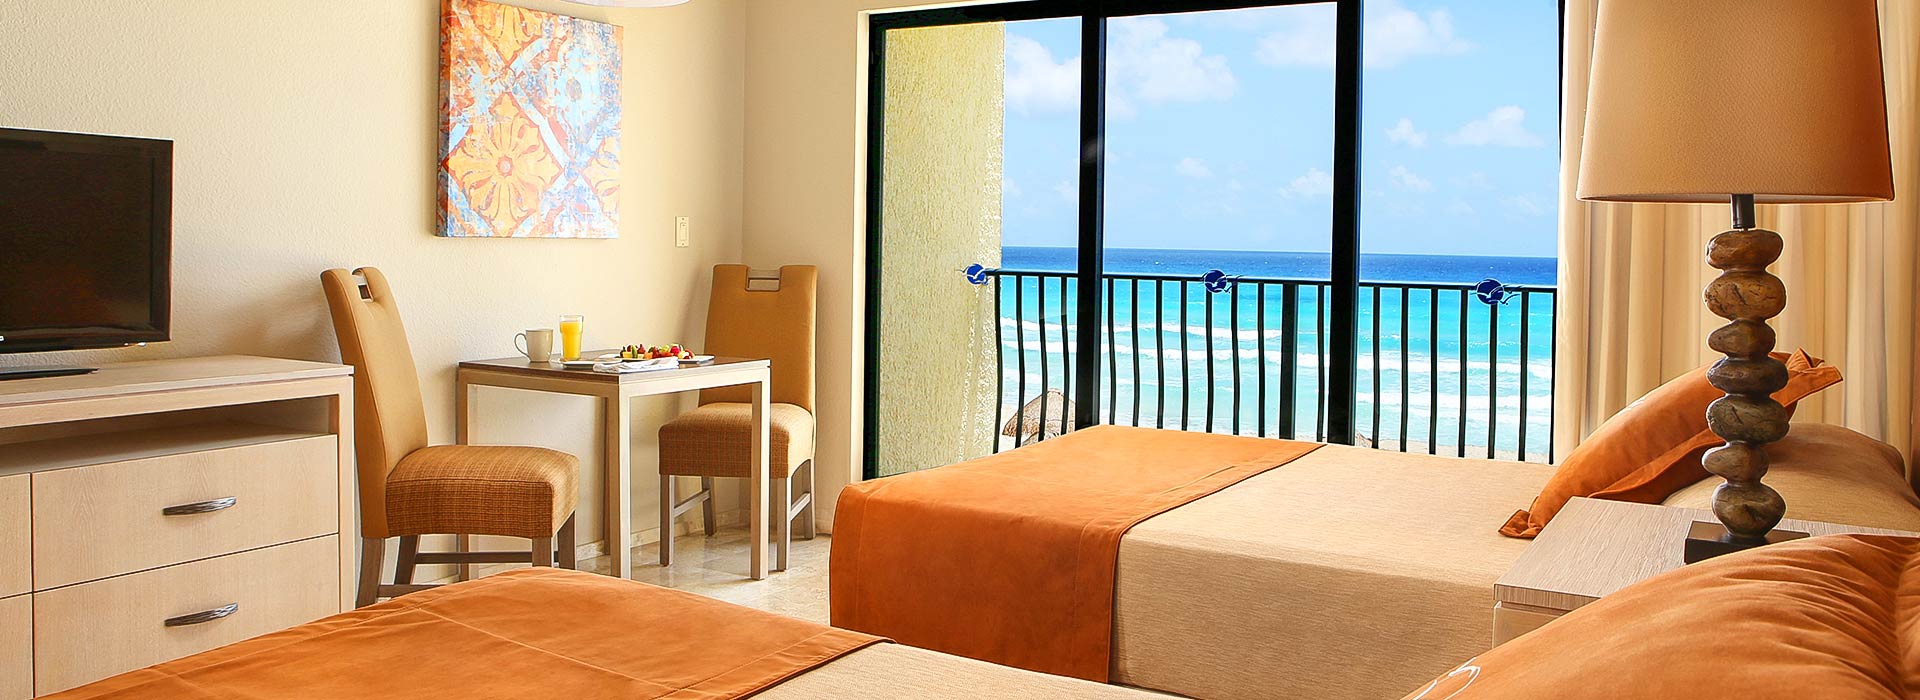 El resort de playa en Cancún con incomparables vistas del Mar Caribe para unas vacaciones familiares